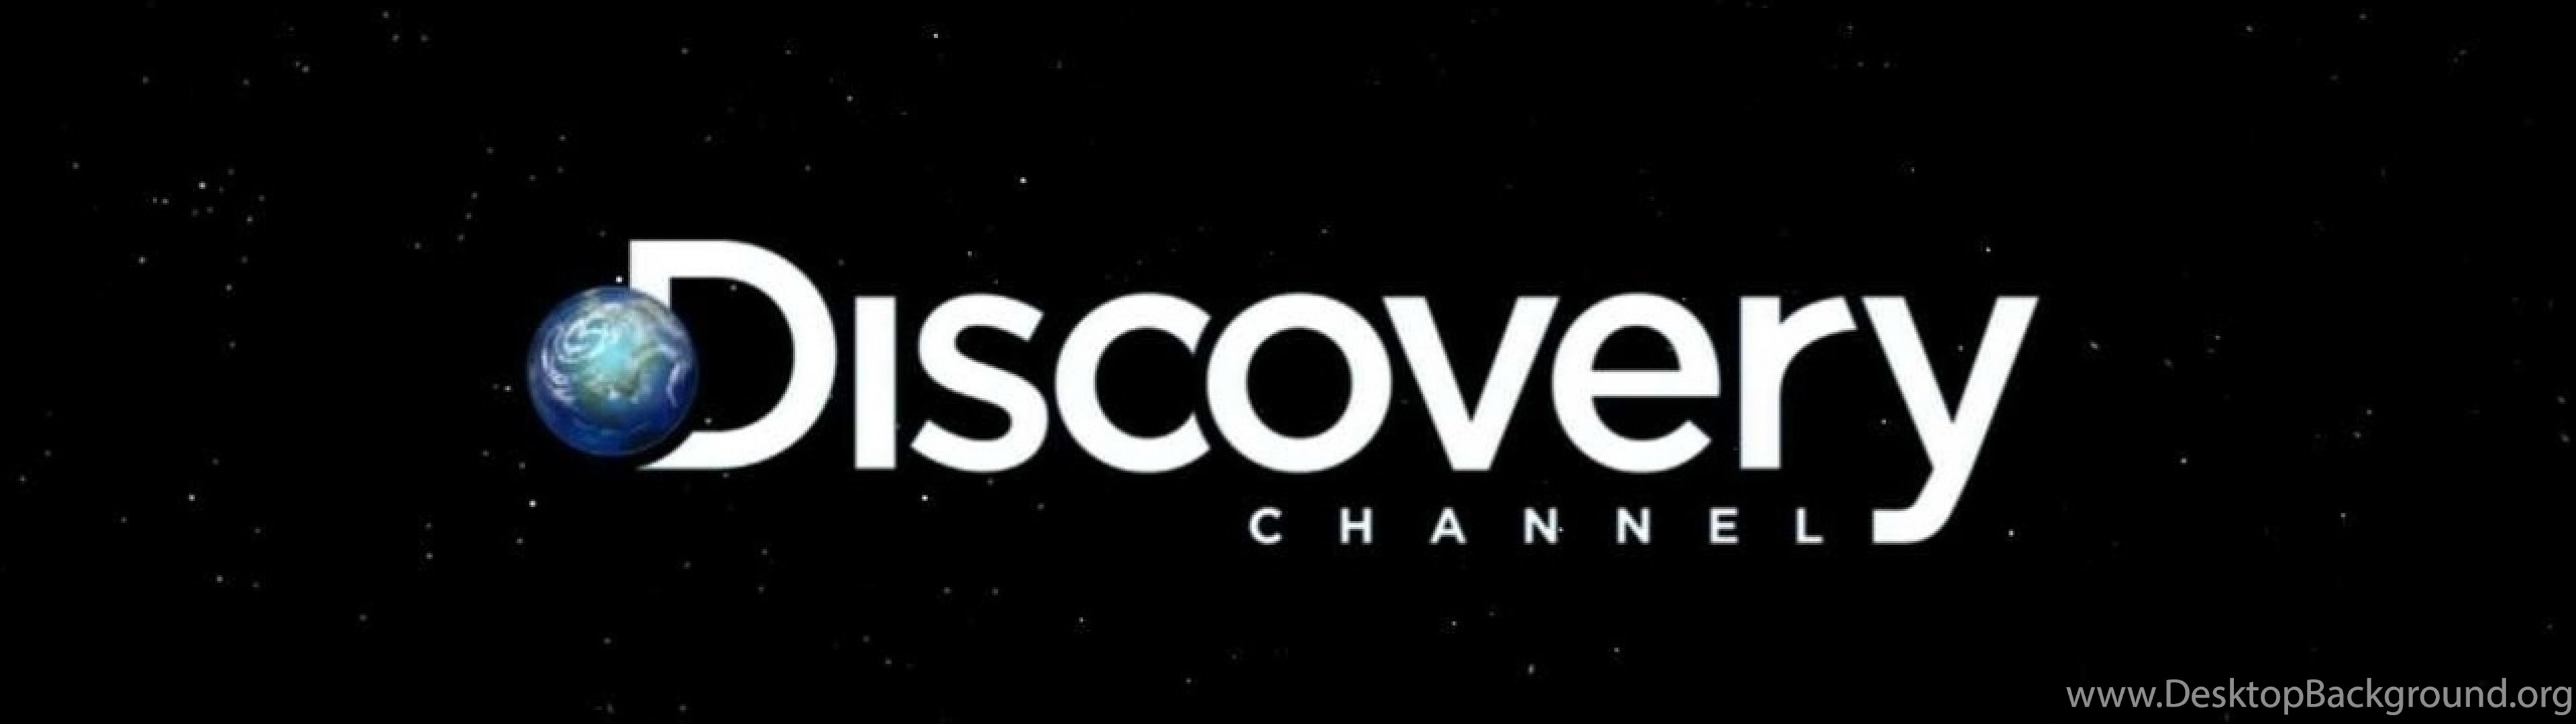 Дискавери отключен. Discovery channel логотип. Discovery канал. Discovery надпись. Discovery картинки.